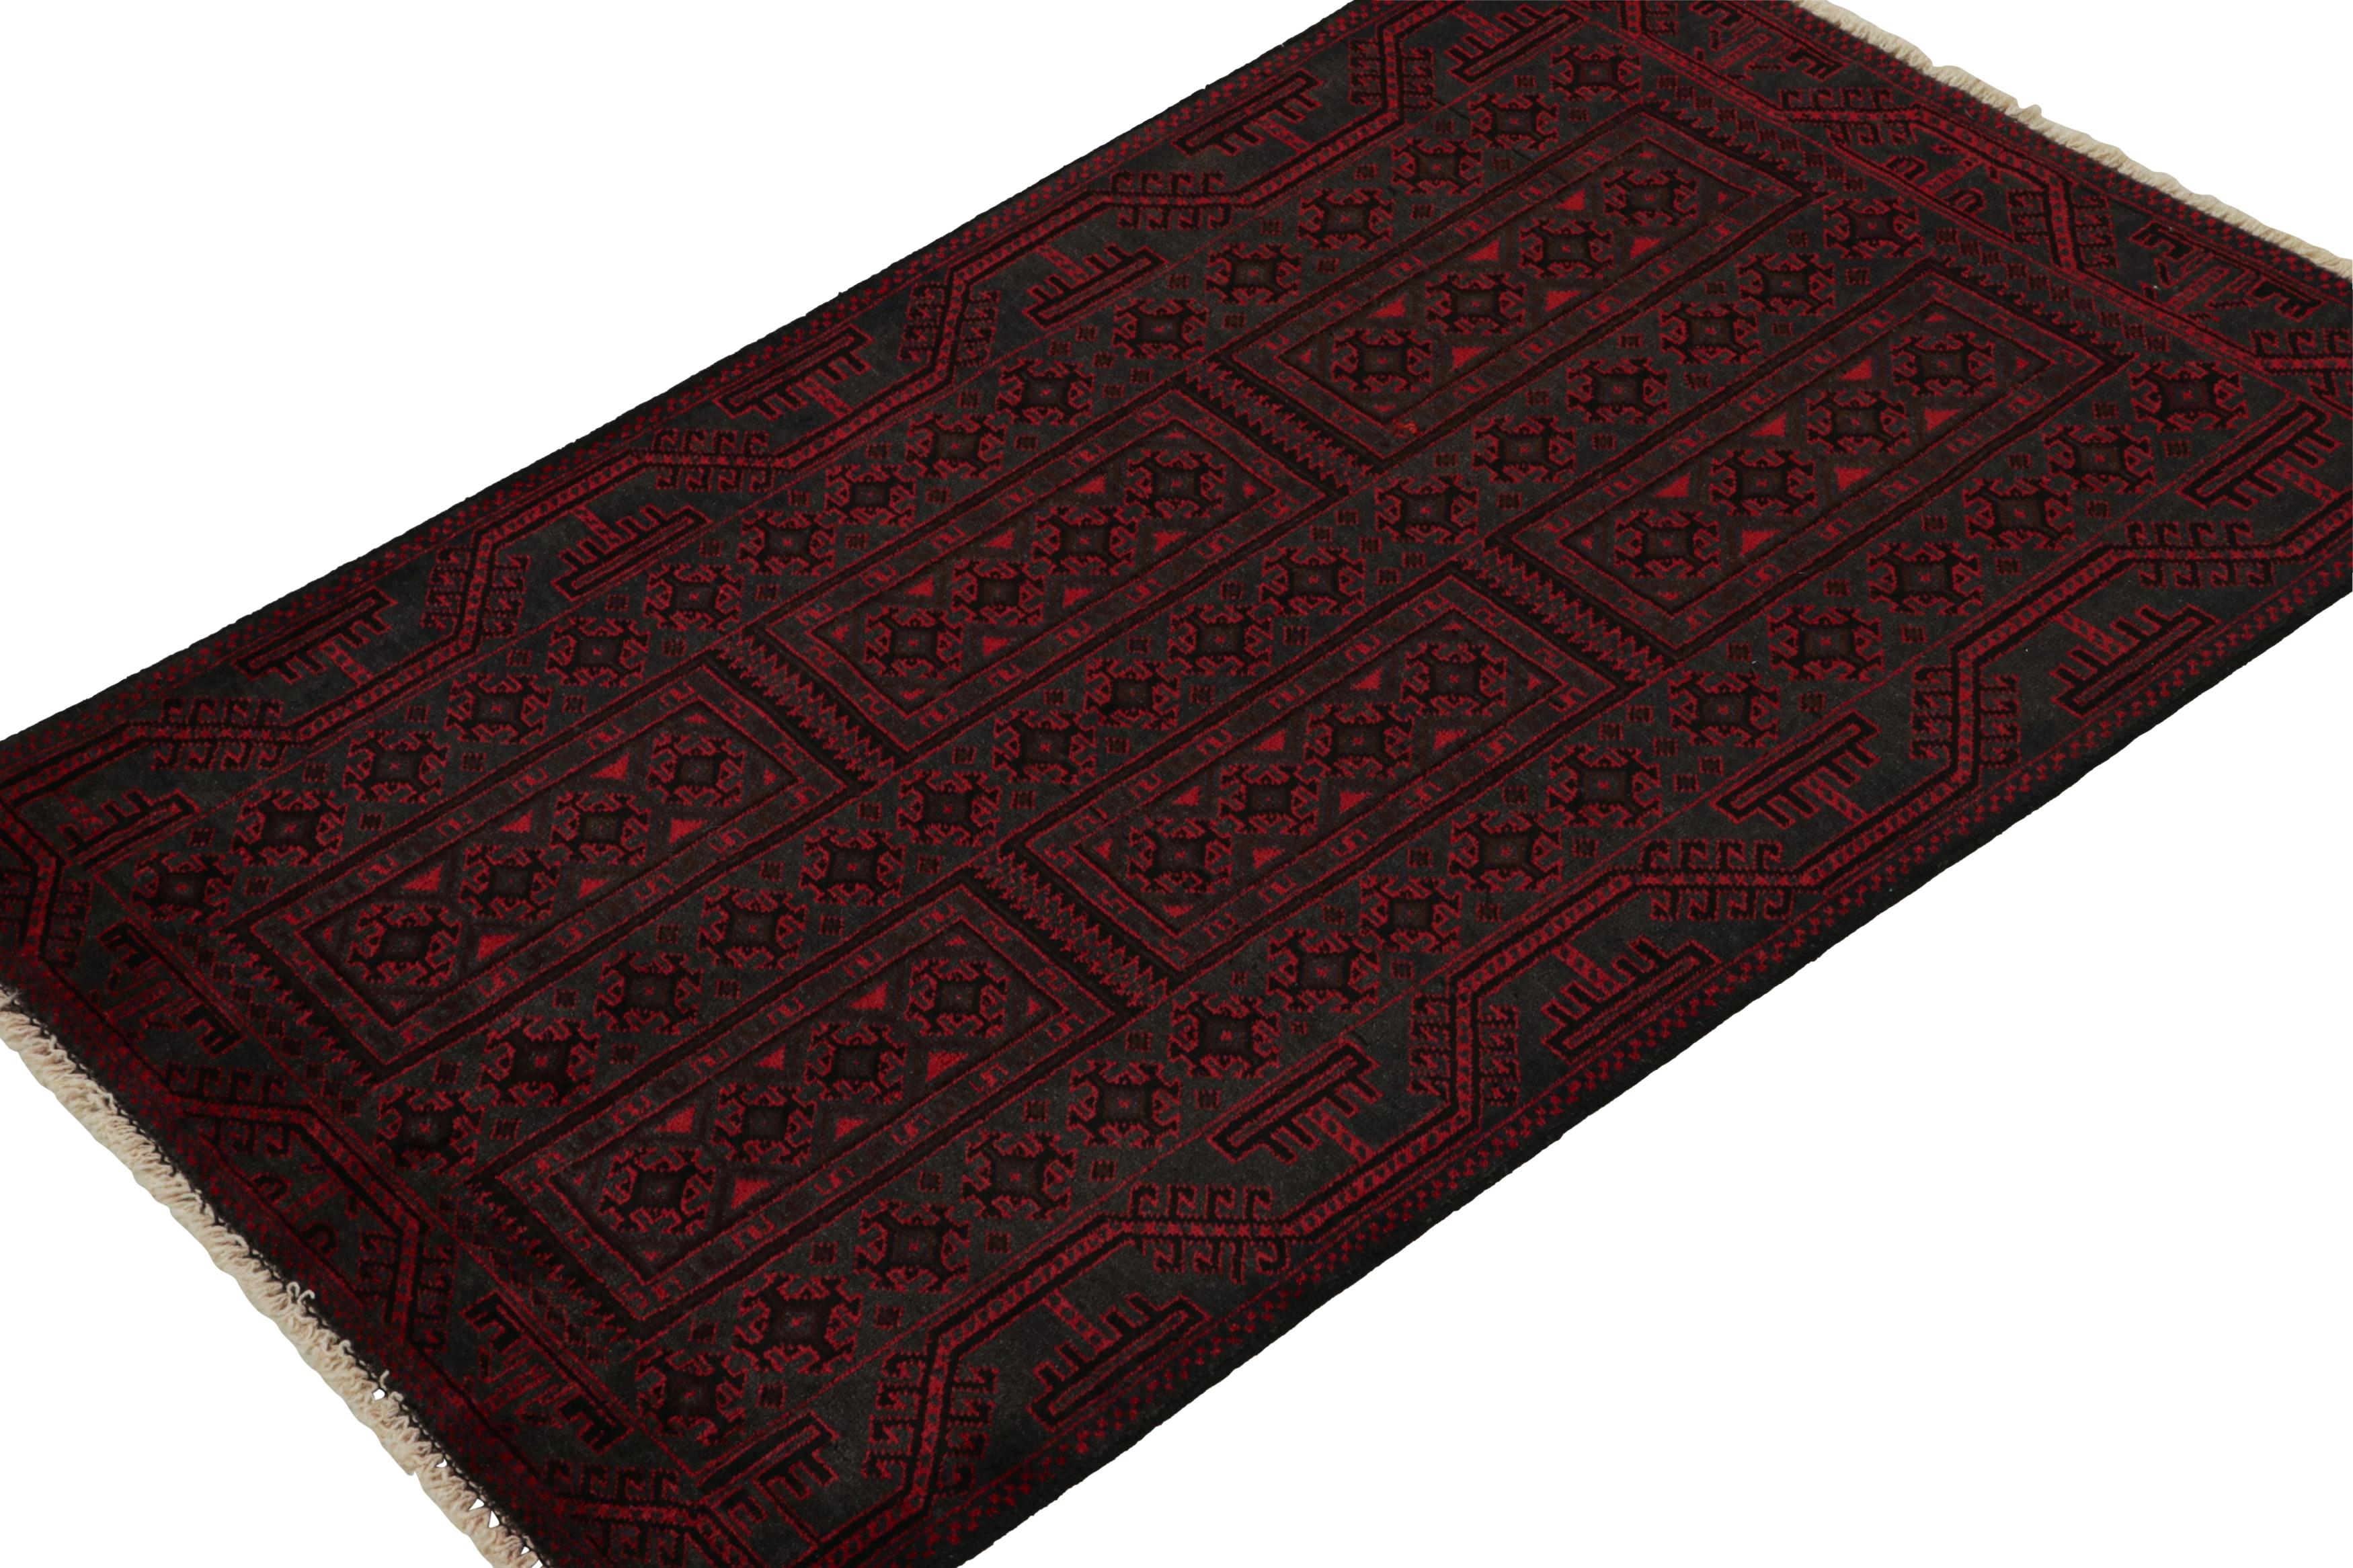 Dieser handgeknüpfte Wollteppich 3x5 aus den 1950er Jahren ist der jüngste Neuzugang in der Rug & Kilim'S Antique & Vintage Collection.

Über das Design:

Der persische Belutsch-Teppich trägt Stammesmuster in satten Rot- und Schwarztönen. Ein